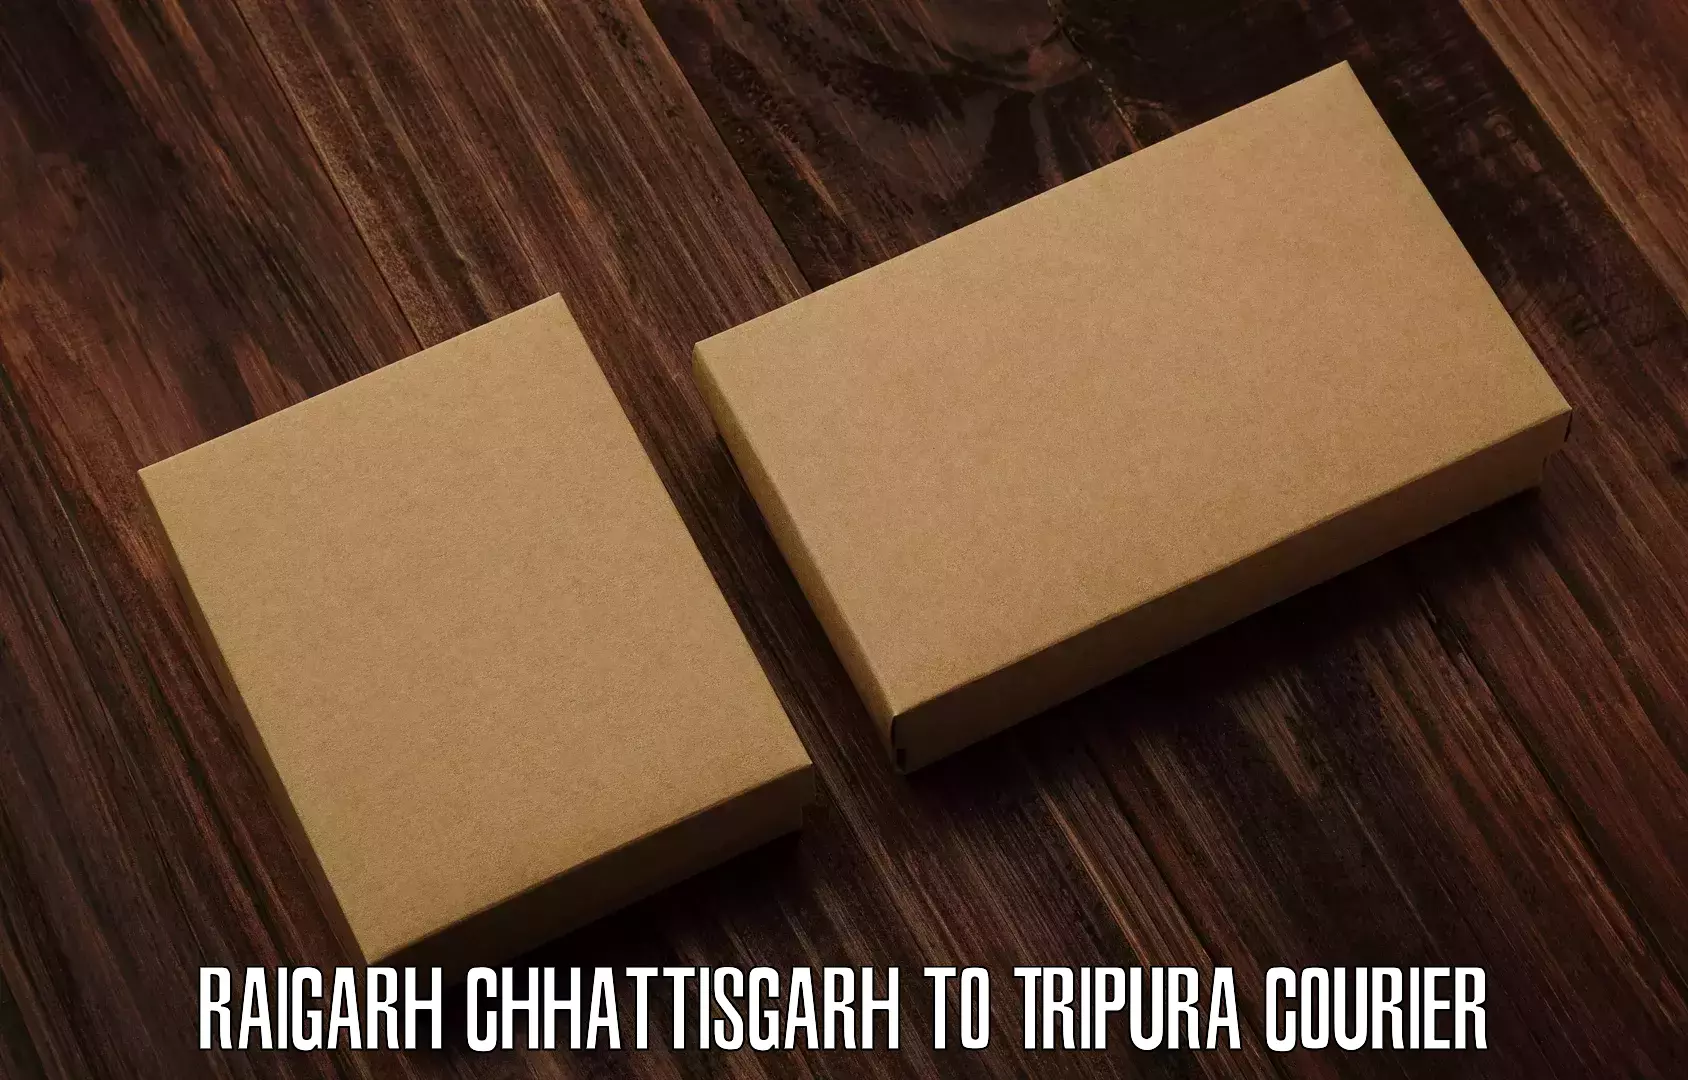 Tailored freight services Raigarh Chhattisgarh to IIIT Agartala